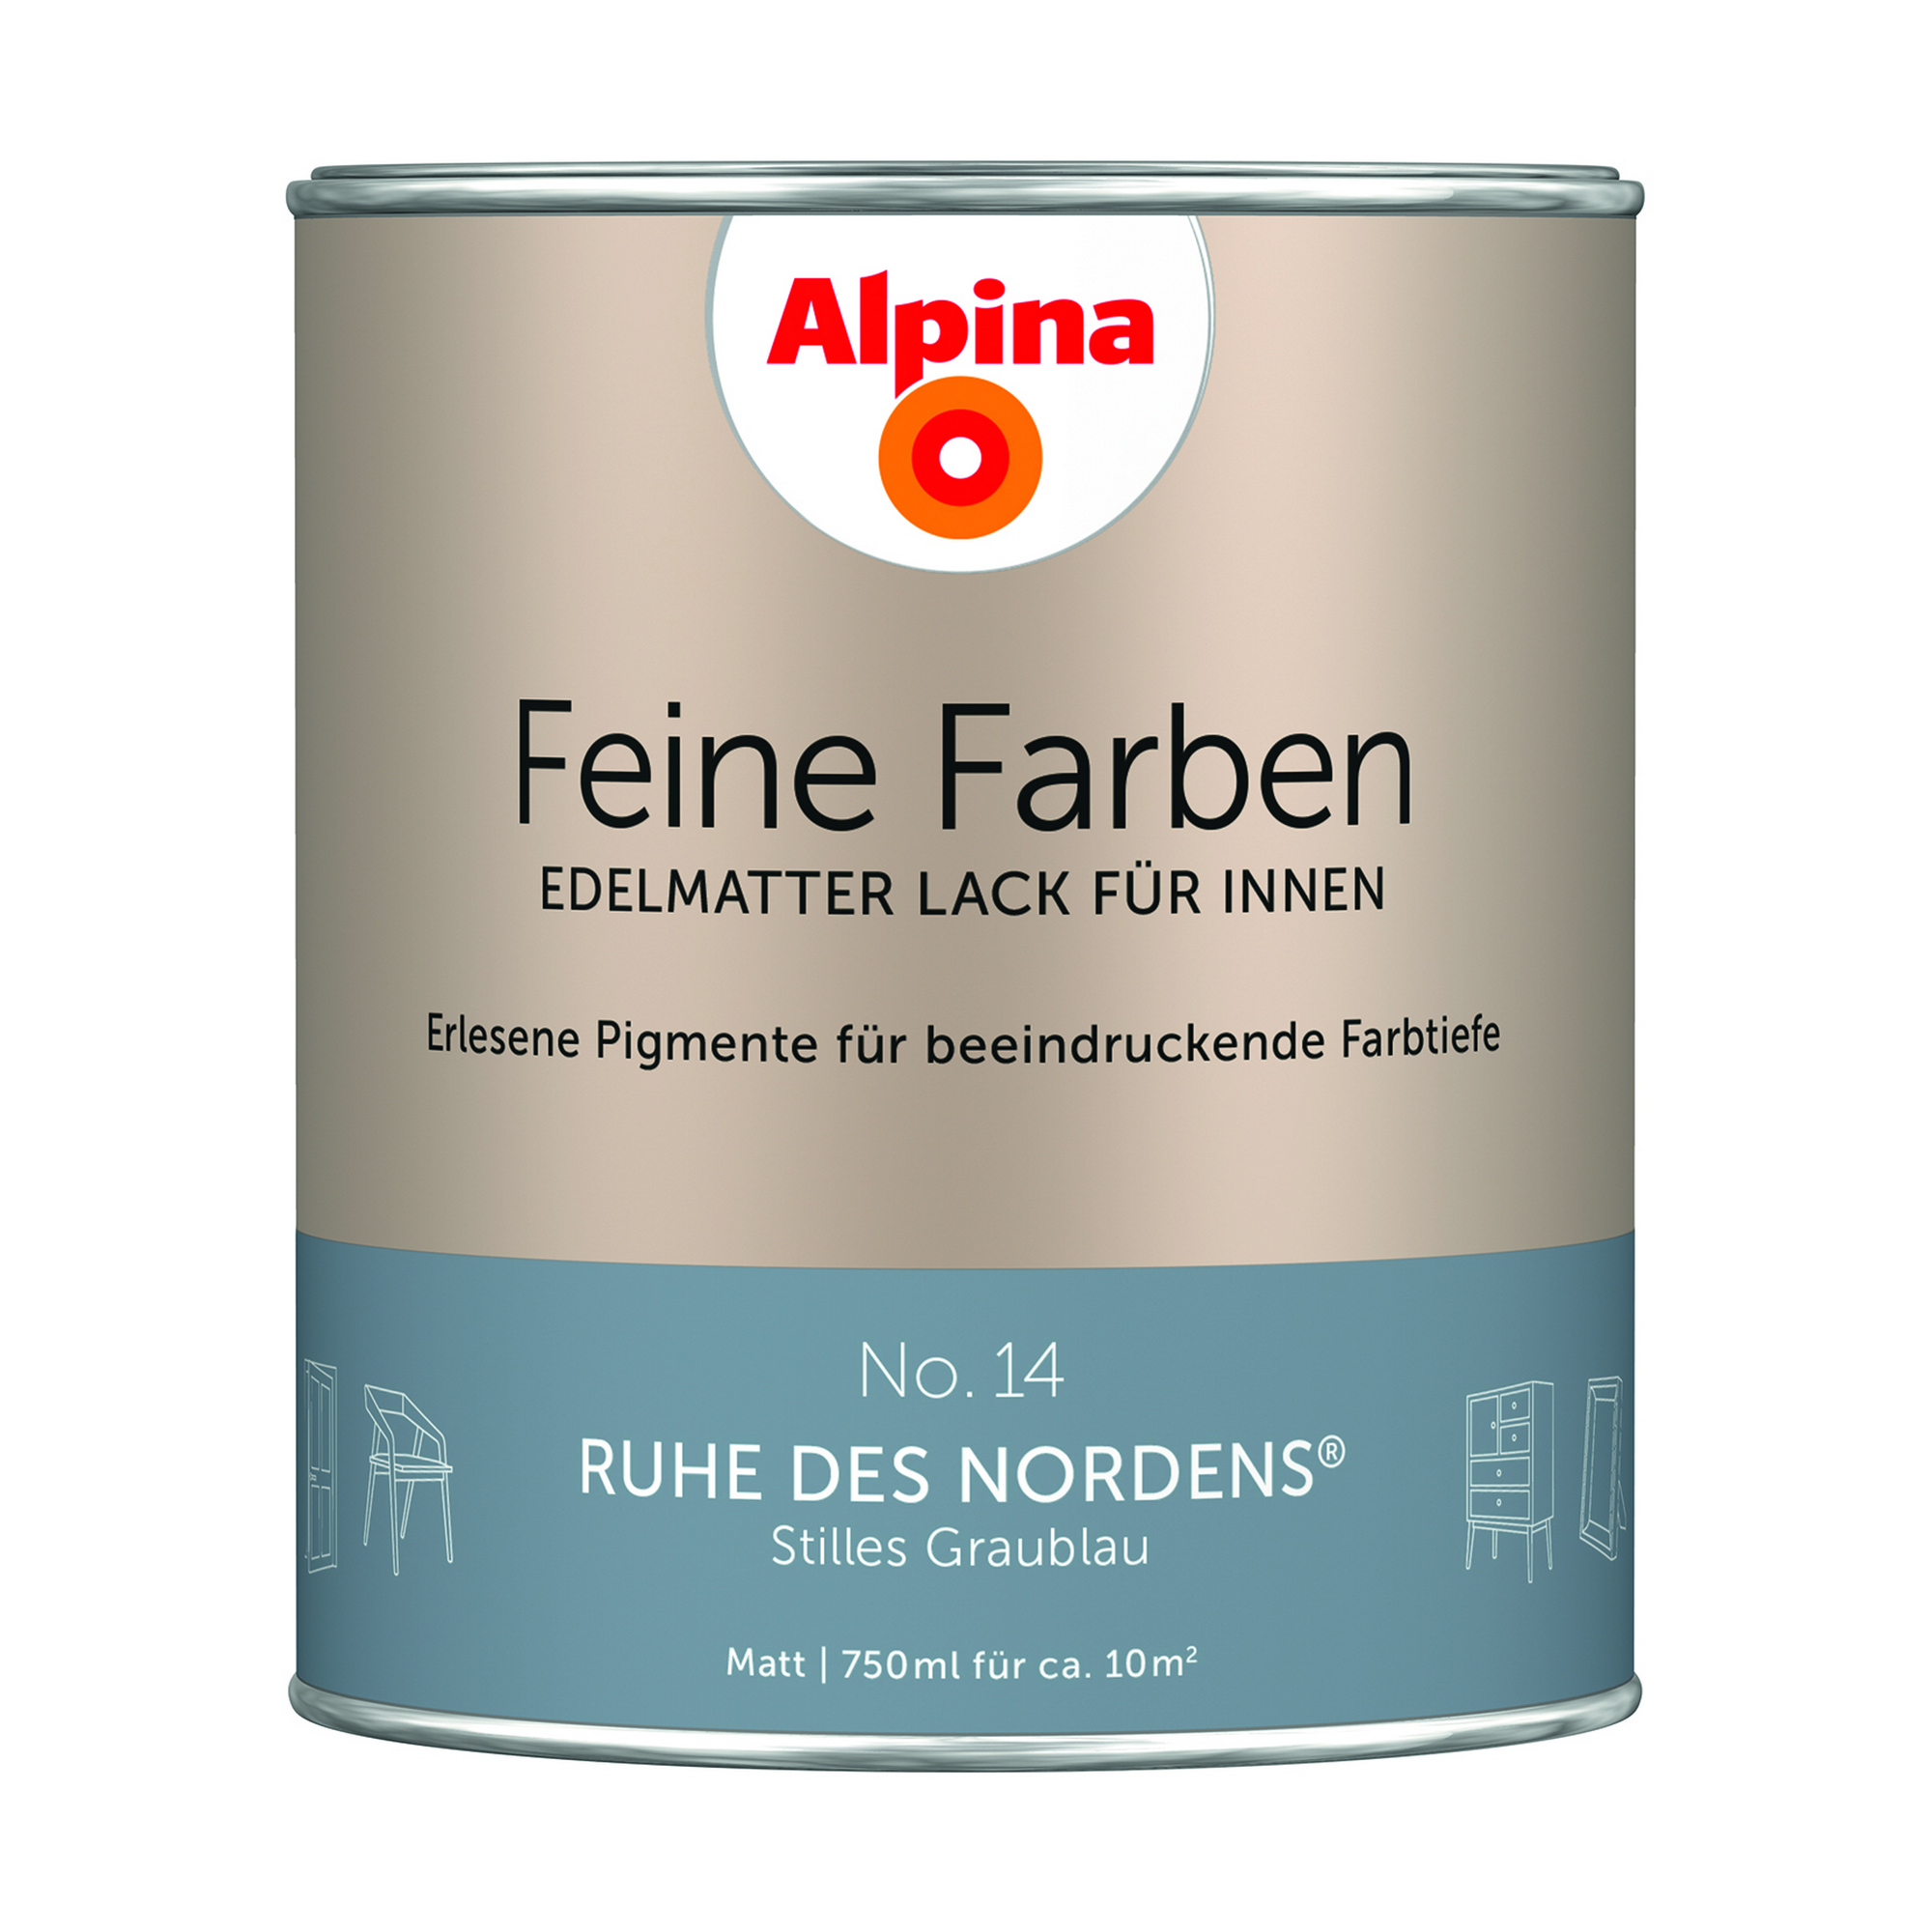 Feine Farben 'Ruhe des Nordens' graublau matt 750 ml + product picture